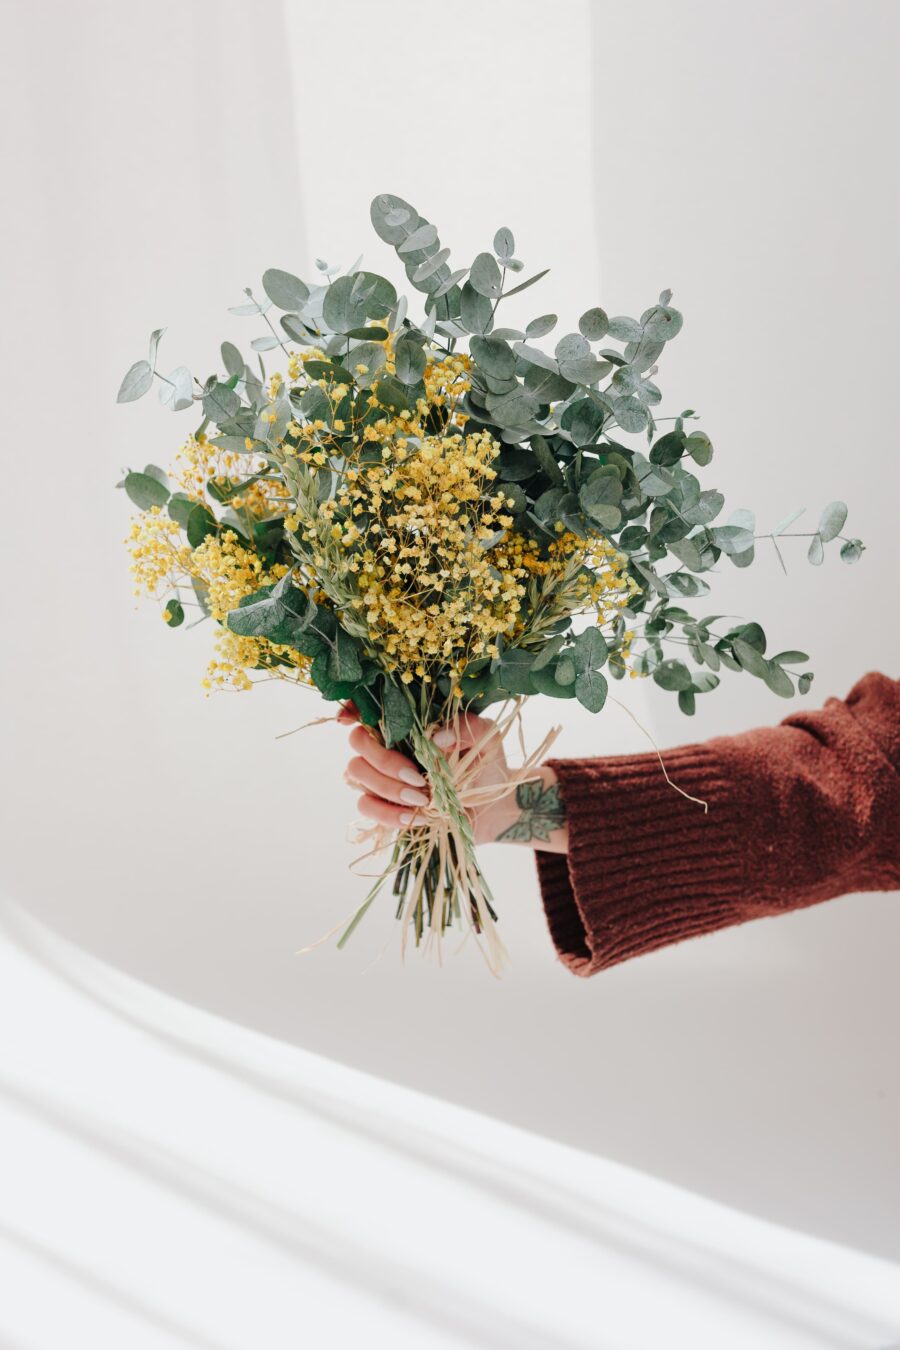 Haz tu pedido de flores preservadas hoy mismo y disfruta de la conveniencia de recibir tus arreglos florales directamente en tu hogar. ¡Añade un toque de frescura y belleza a cualquier espacio con nuestras flores preservadas!